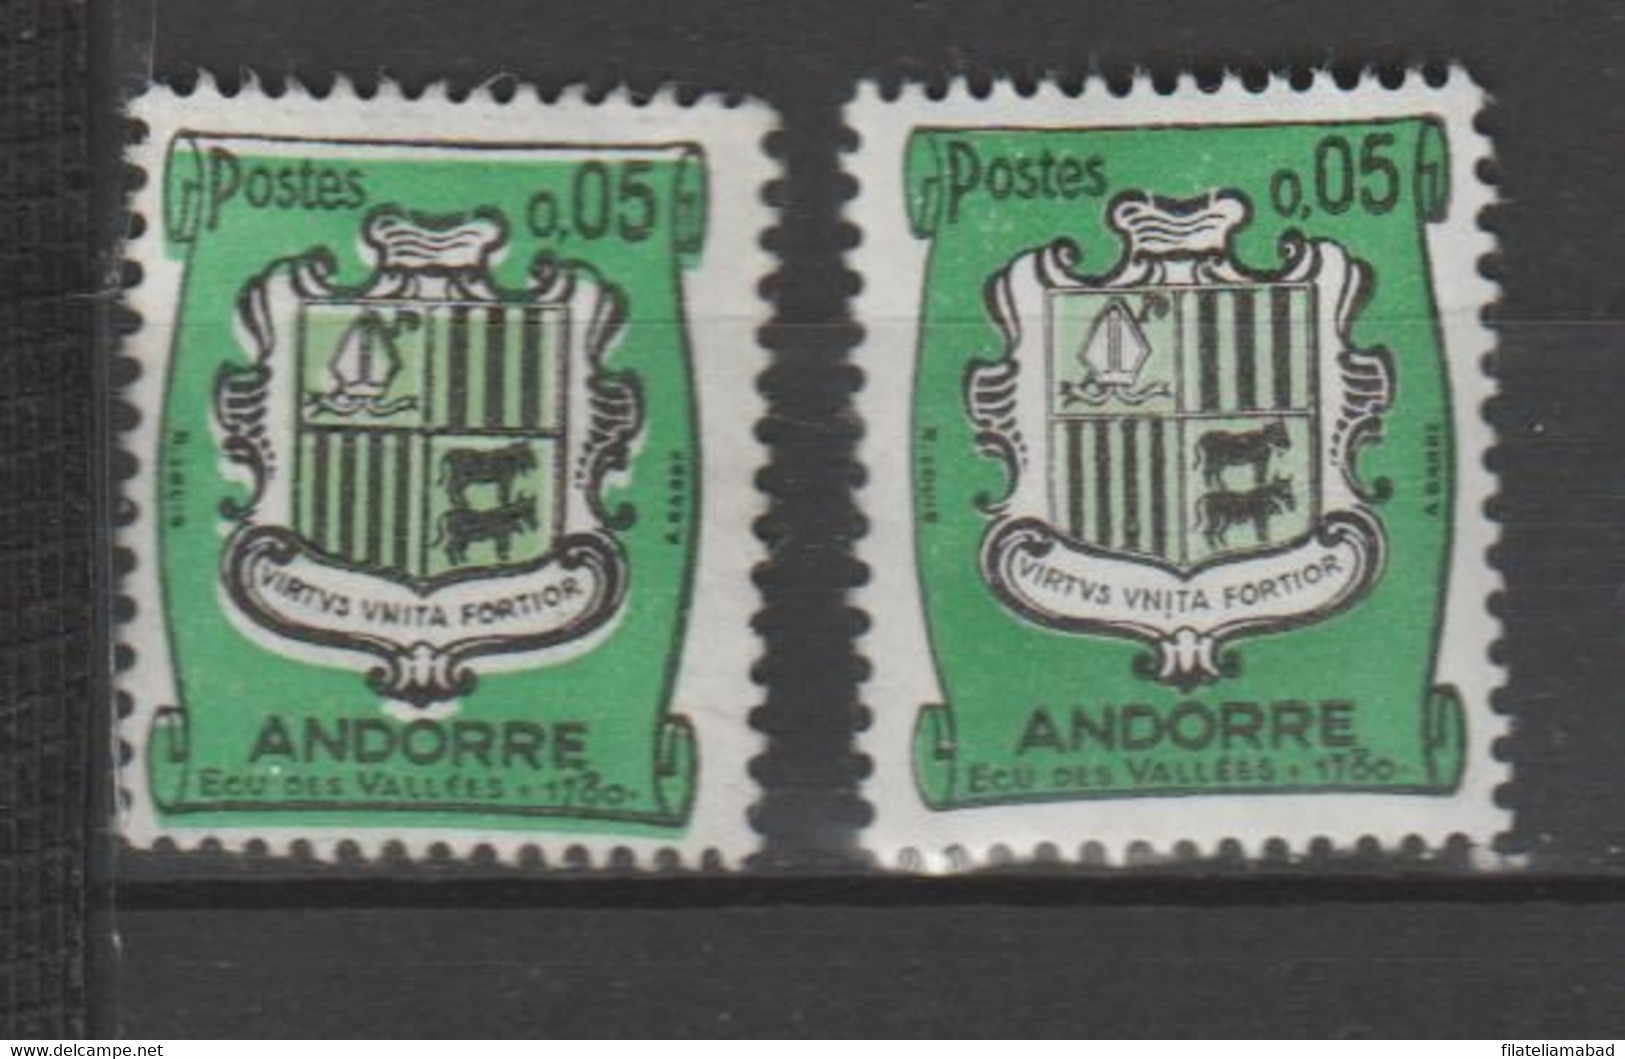 ANDORRA CORROS  FRANCÉS  UNO DE LOS SELLOS TINTAS CORRIDAS   (S.8) - Used Stamps